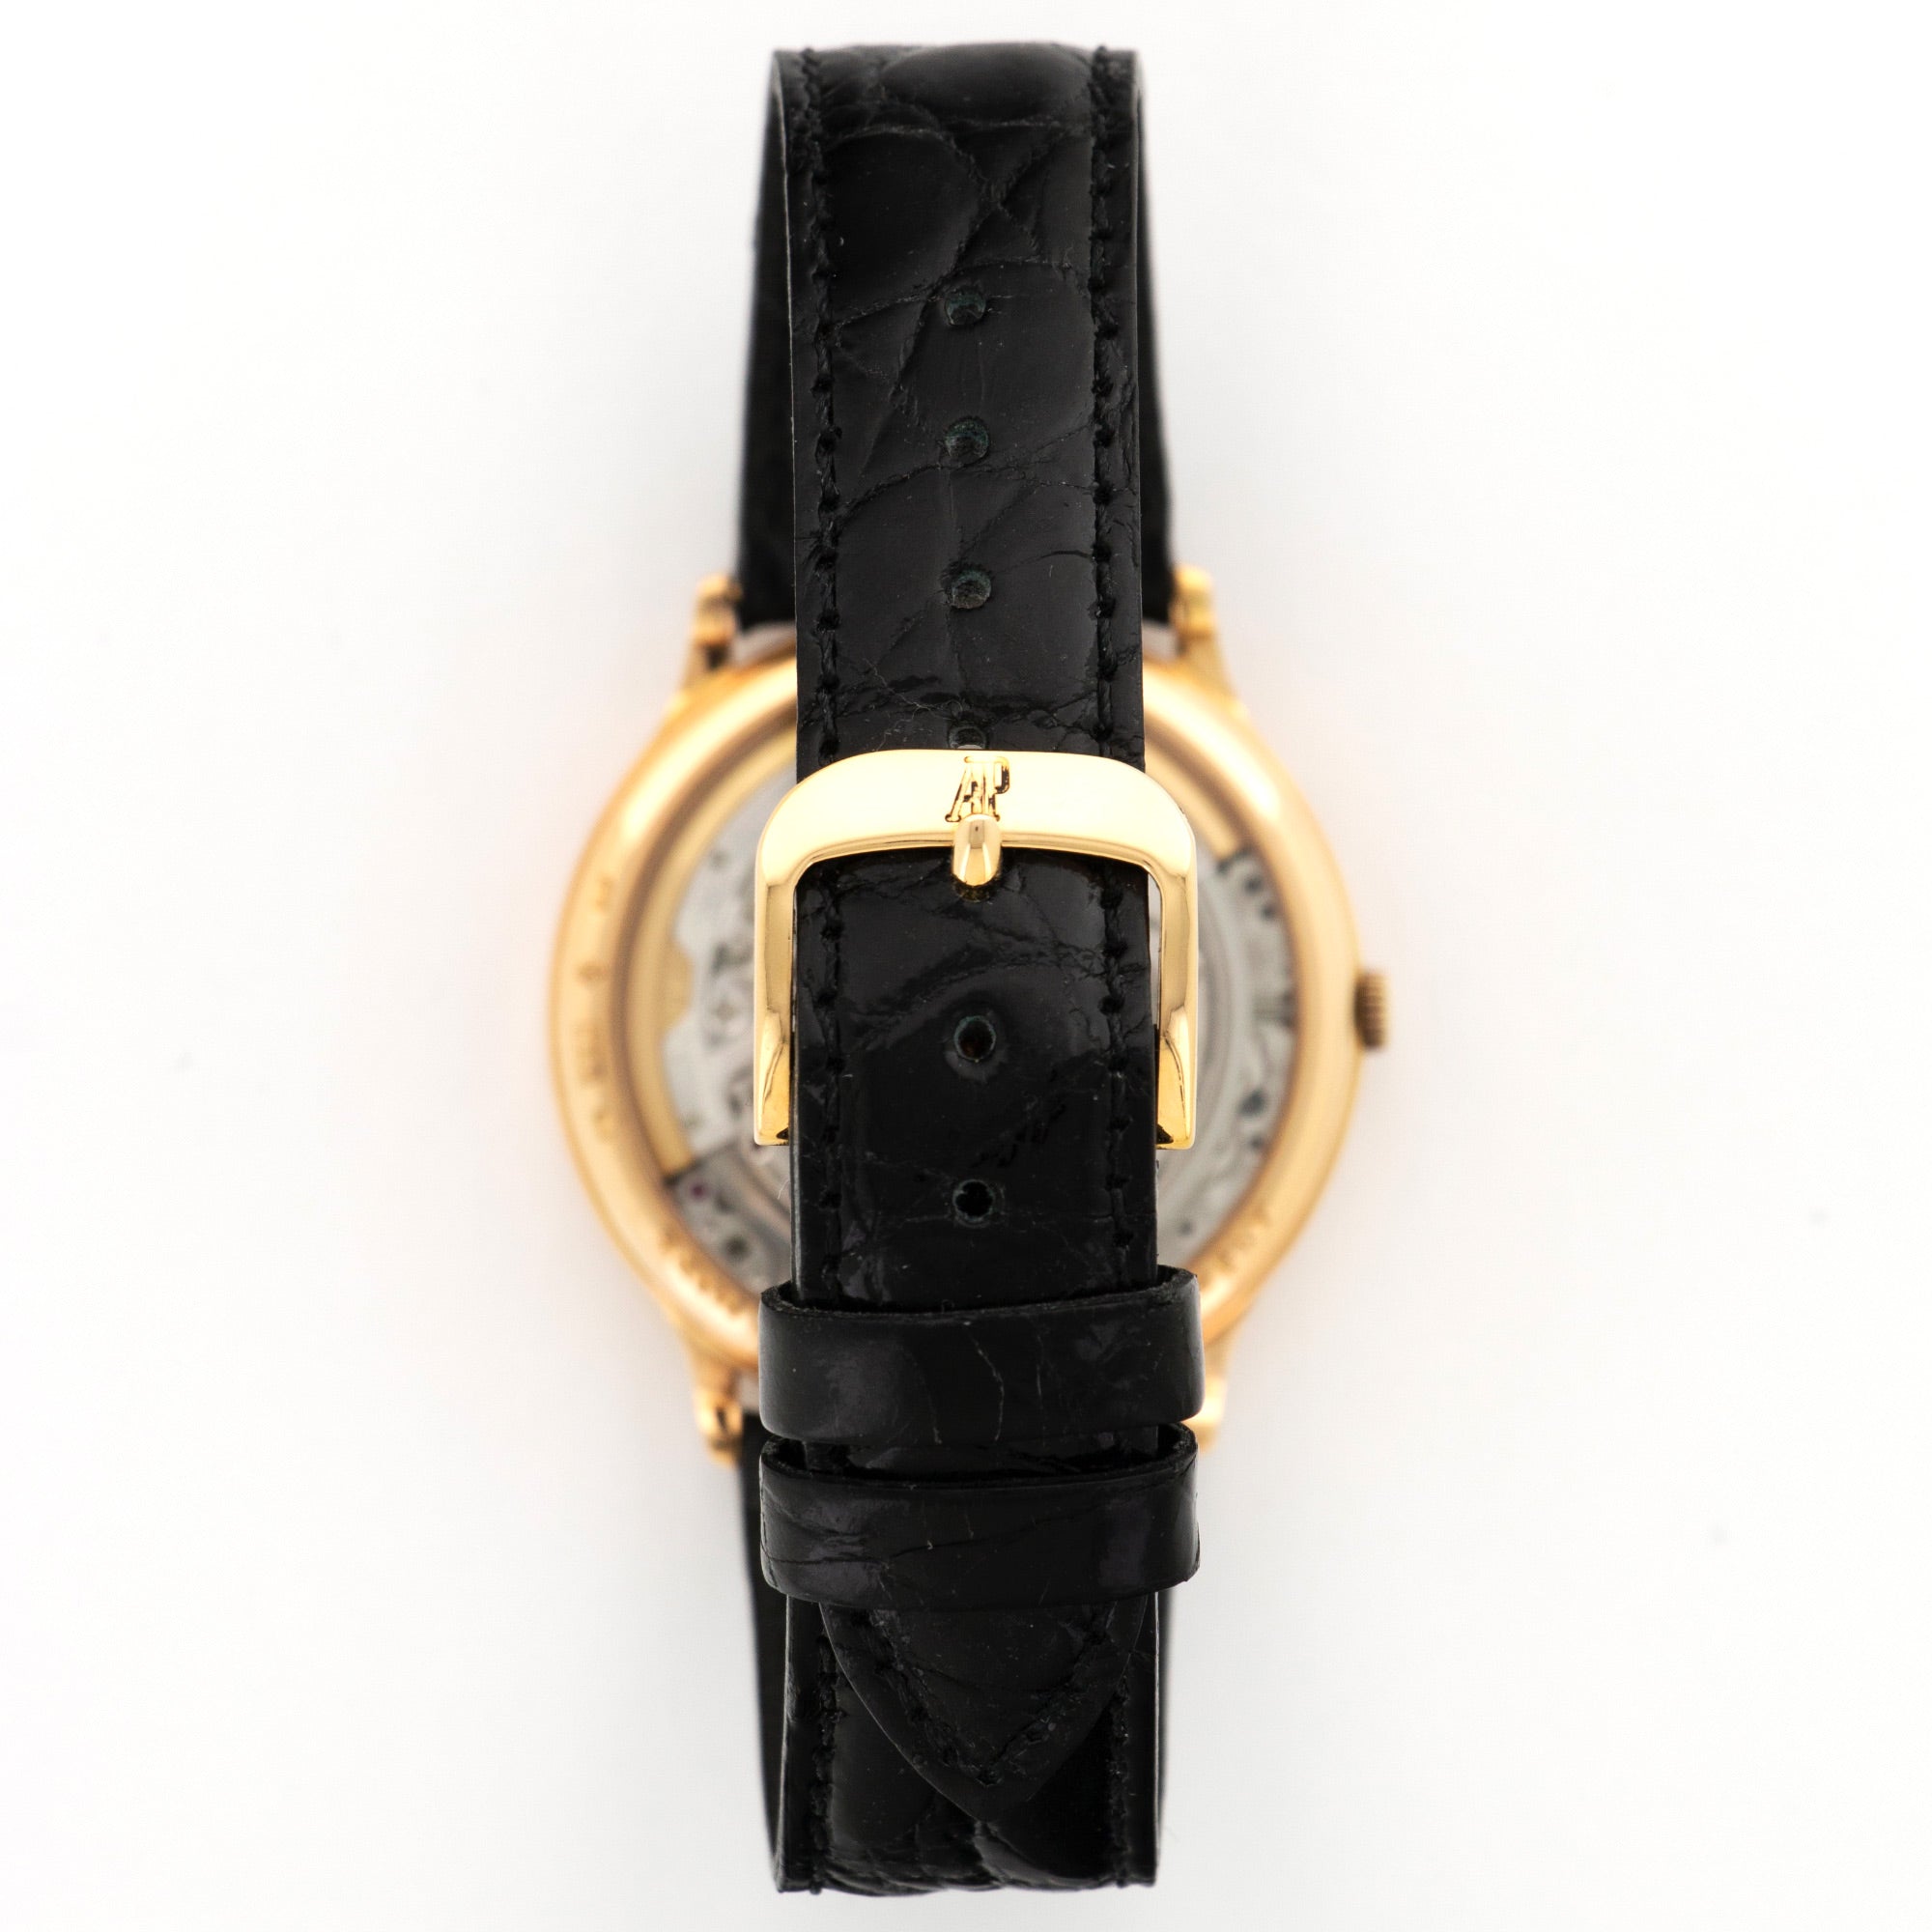 Audemars Piguet - Audemars Piguet Rose Gold Skeletonized Ferrari Racing Car Watch, Ref. 14677 - The Keystone Watches